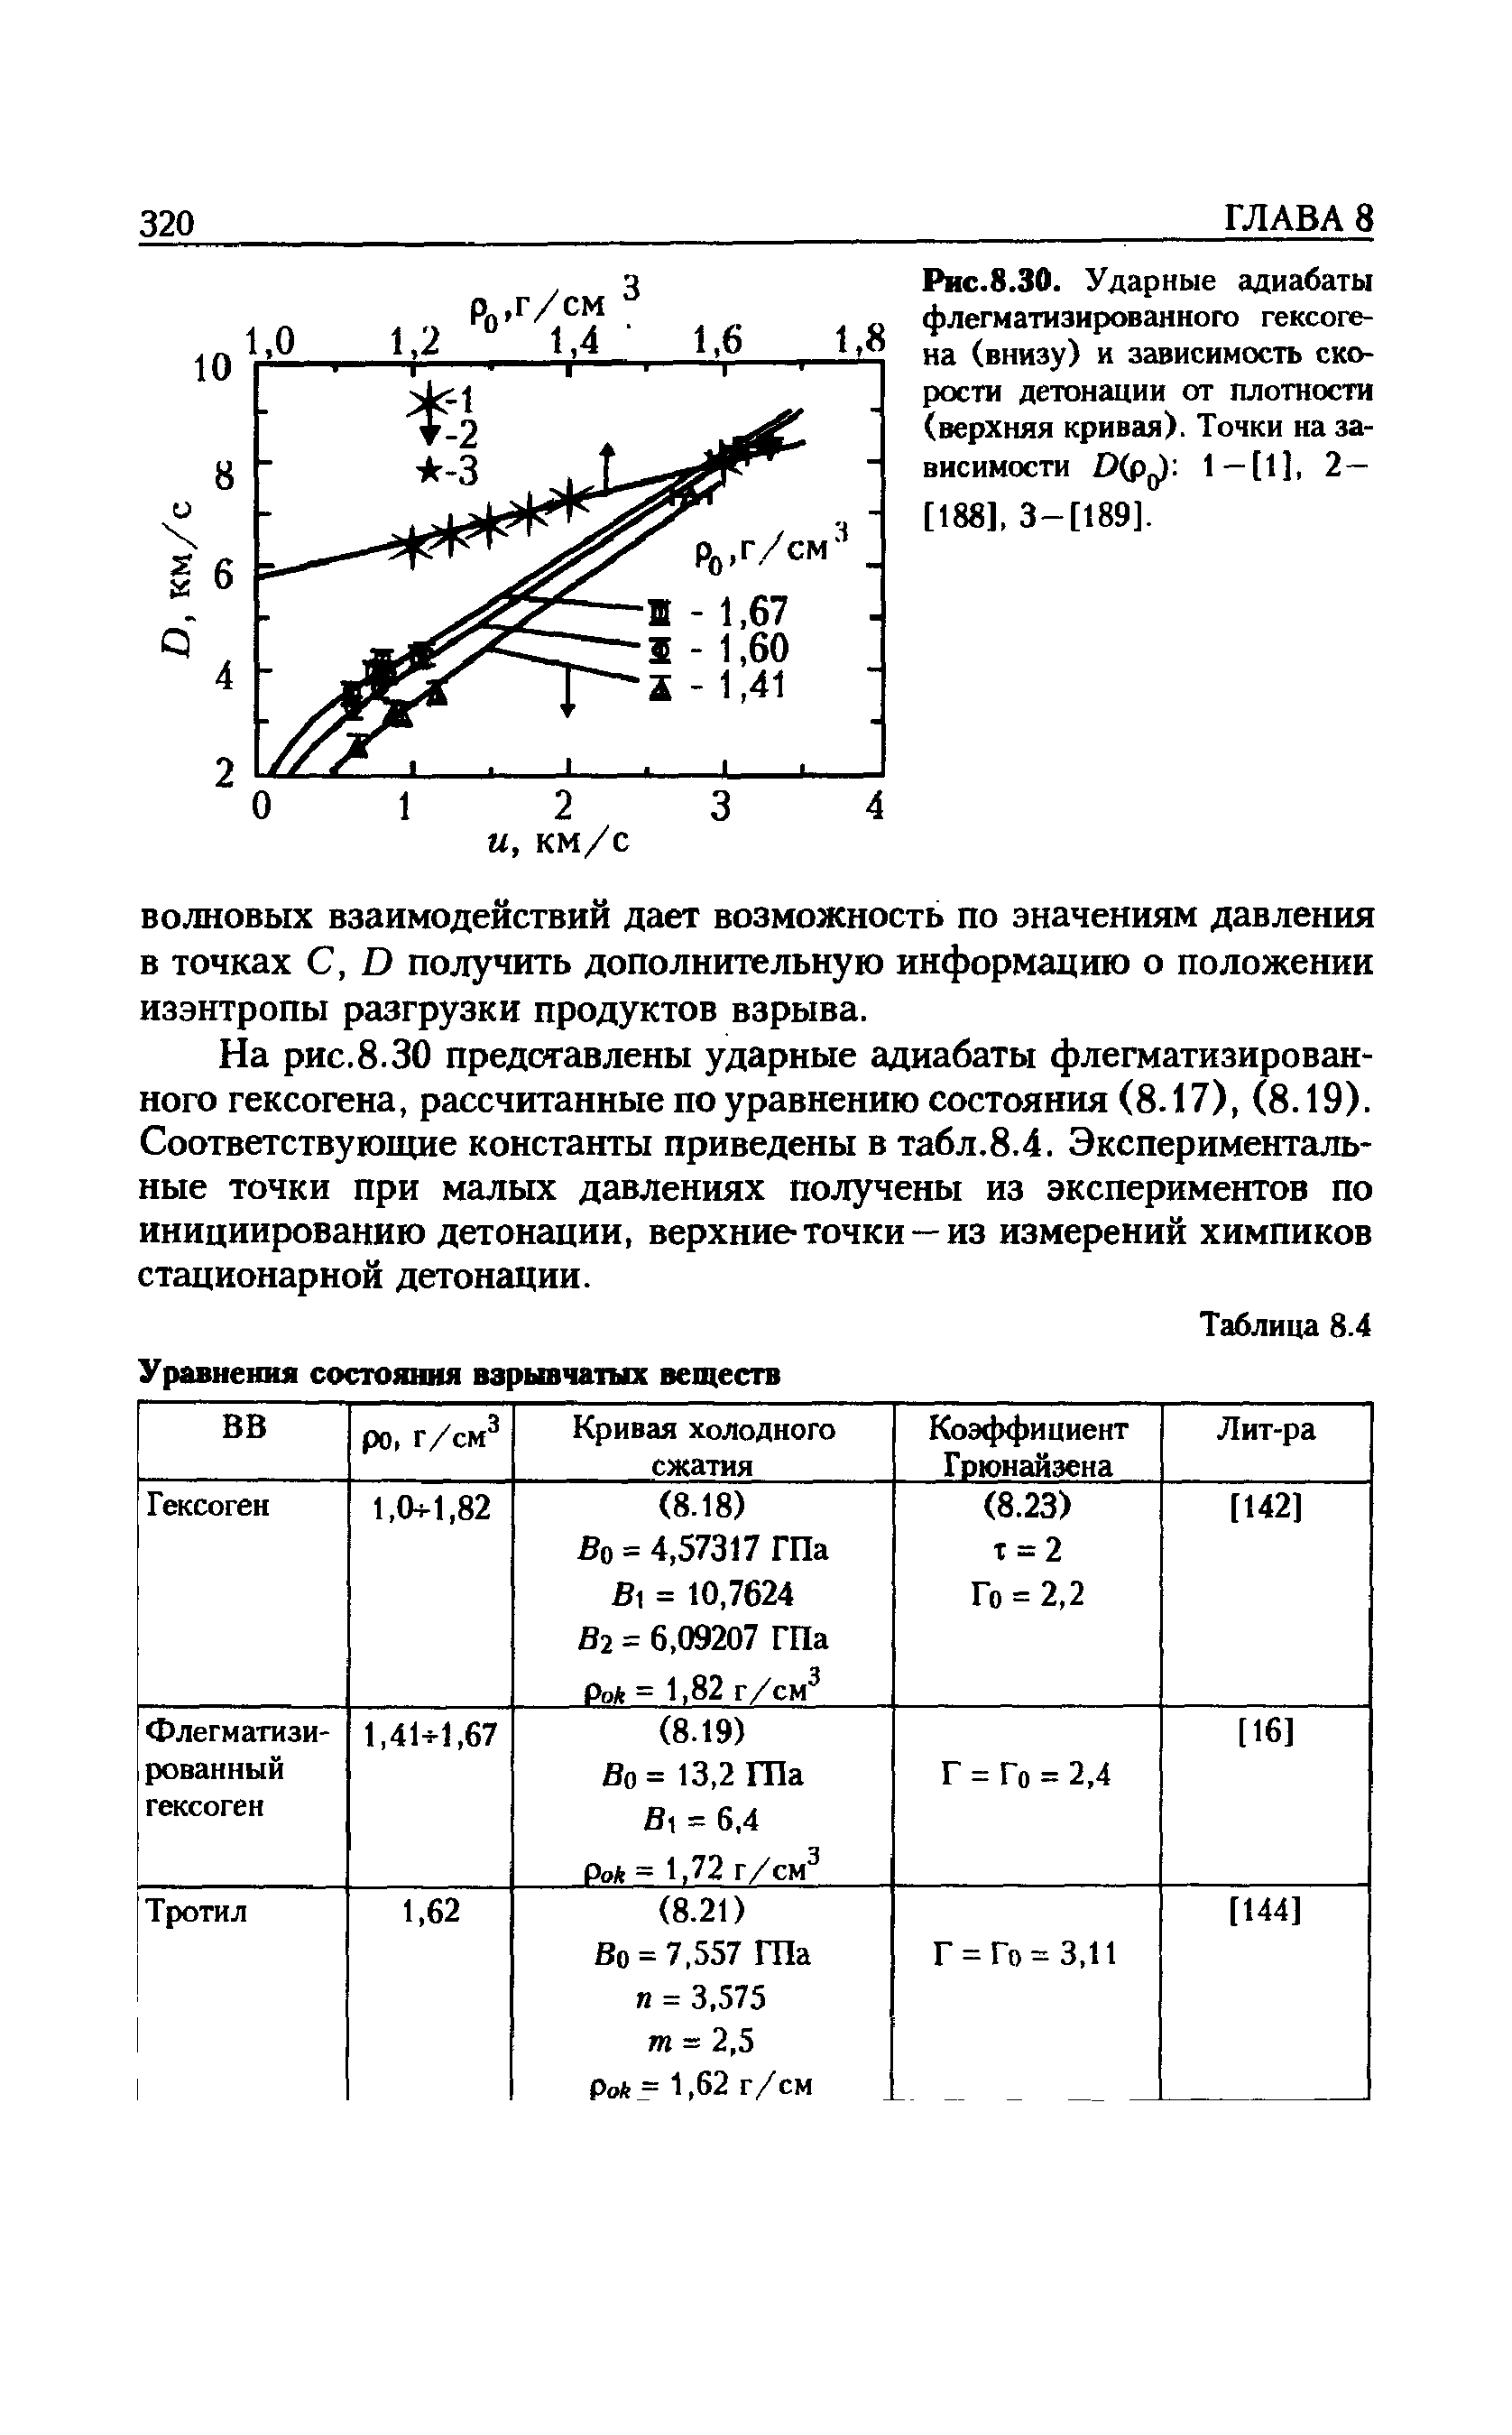 Рис.8.30. <a href="/info/19688">Ударные адиабаты</a> флегматизированного гексогена (внизу) и зависимость <a href="/info/203294">скорости детонации</a> от плотности (верхняя кривая). Точки на зависимости D(Pq) 1—[1], 2— [188], 3-[189].
